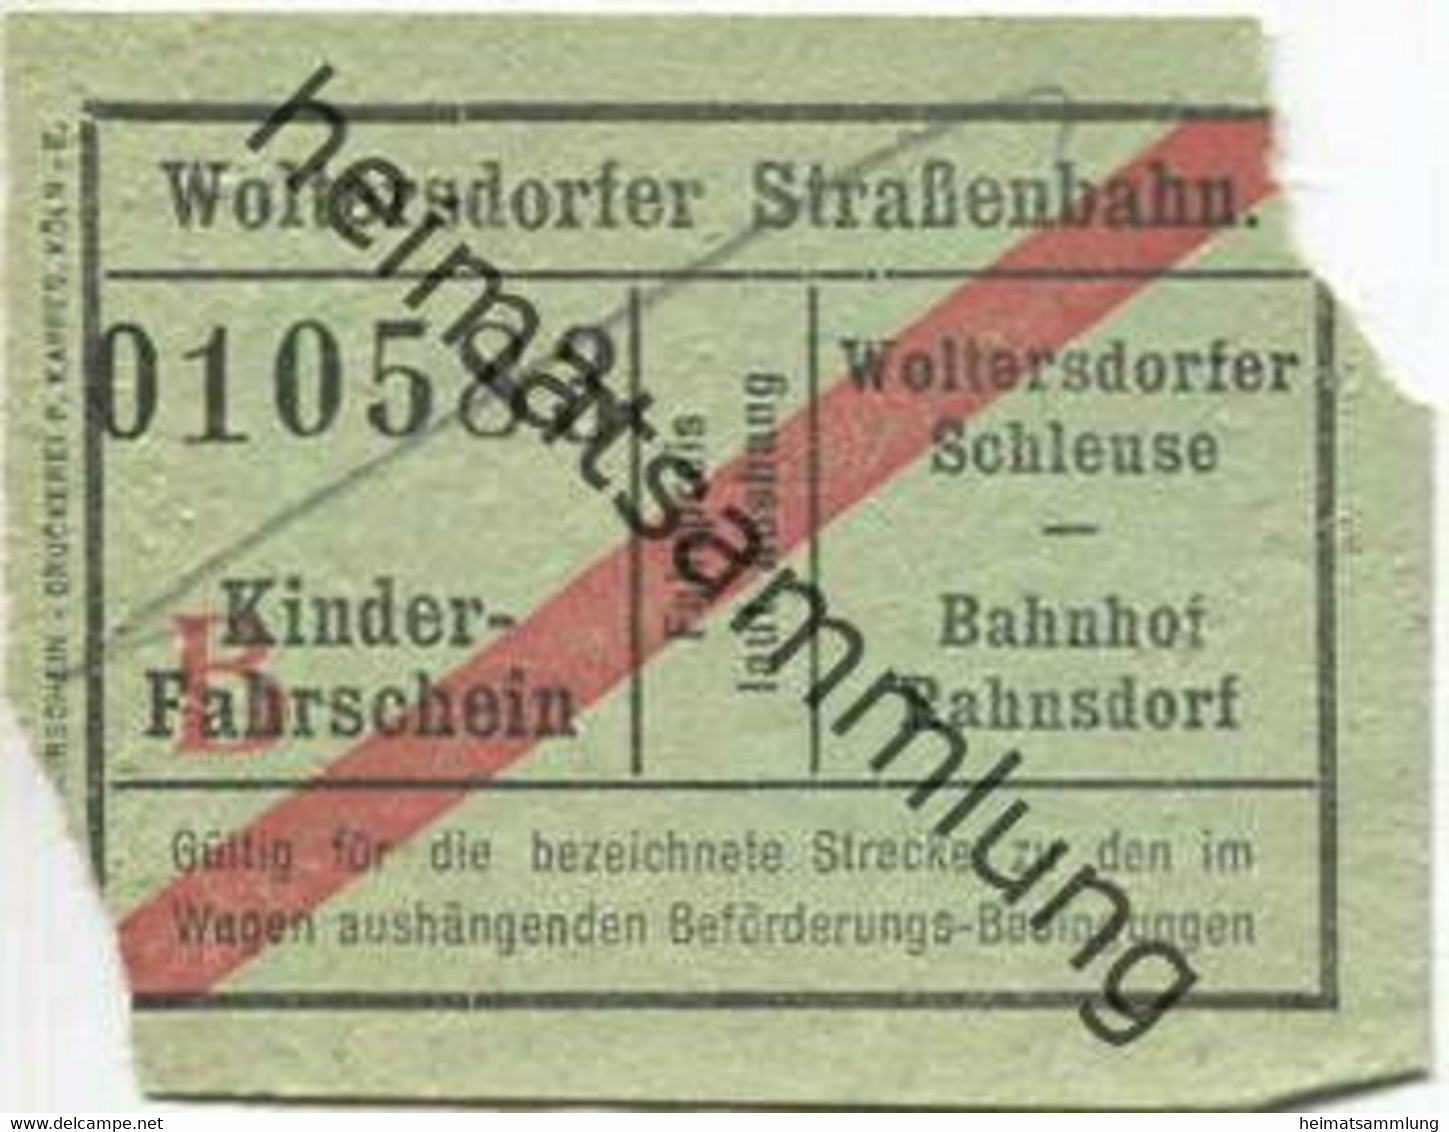 Deutschland - Woltersdorf - Woltersdorfer Strassenbahn - Fahrschein Wolterdorfer Schleuse Bahnhof Rahnsdorf - Kinderfahr - Europe